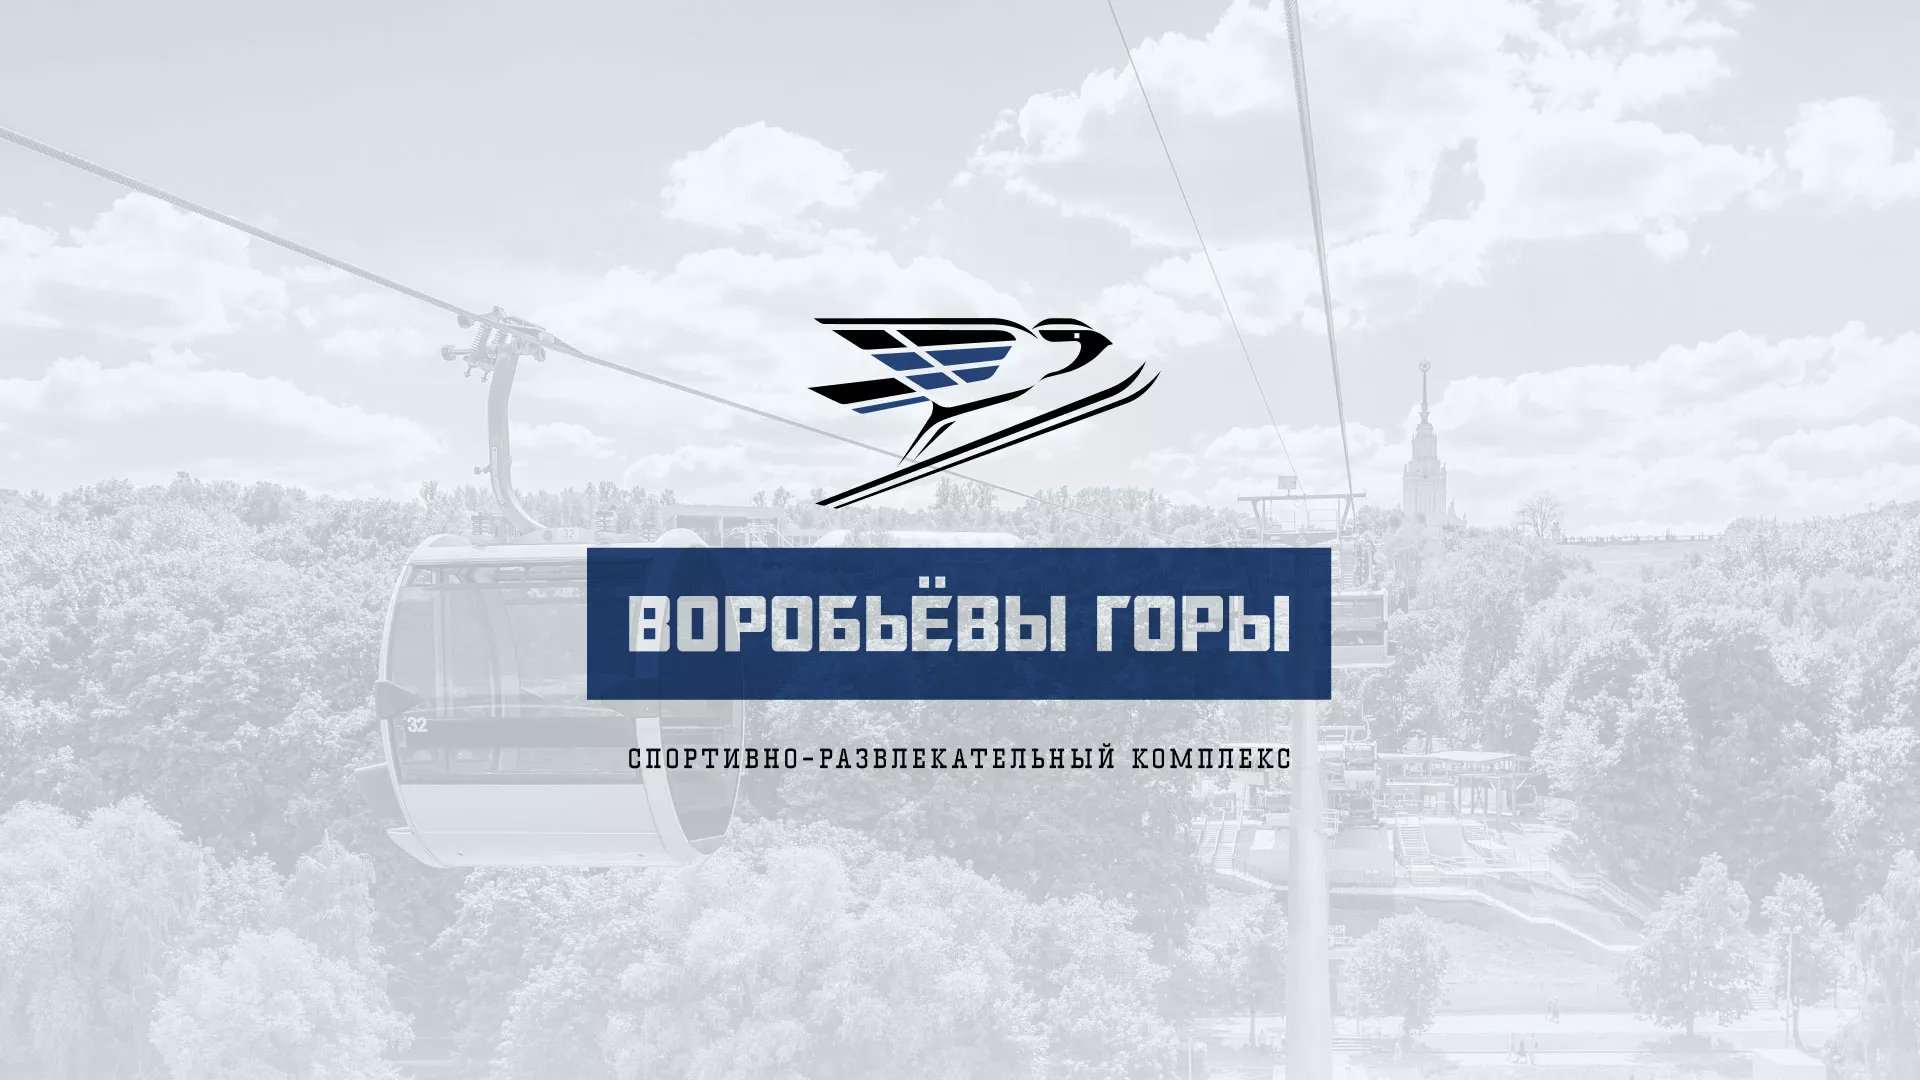 Разработка сайта в Сальске для спортивно-развлекательного комплекса «Воробьёвы горы»